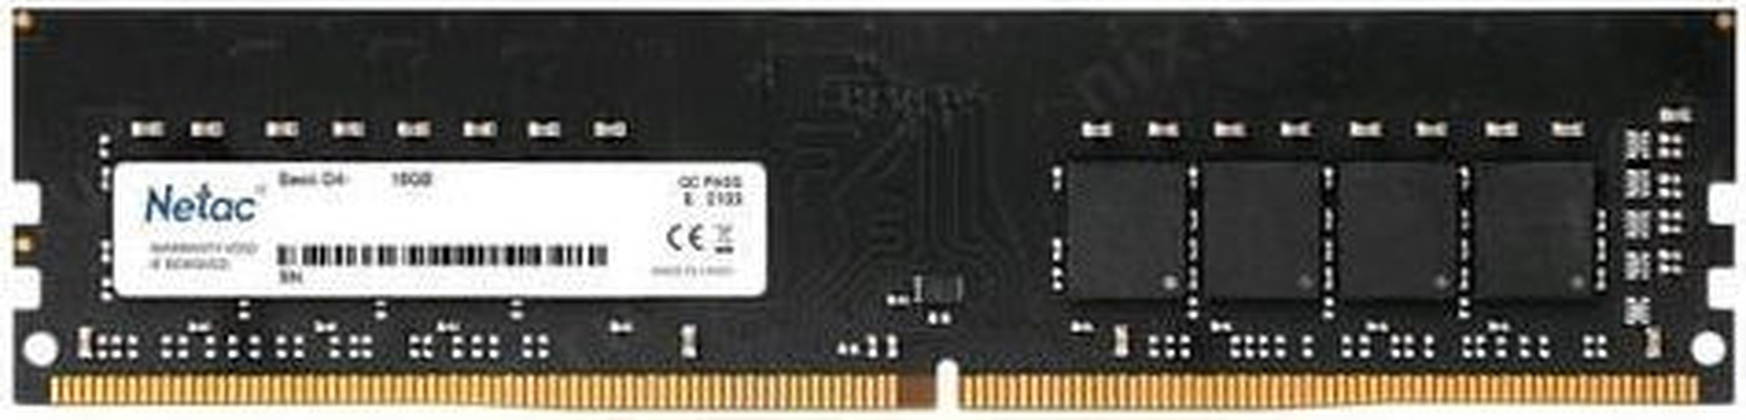 ОЗУ Netac Basic (NTBSD4P32SP-16) DDR4 16 Гб (1x16 Гб)